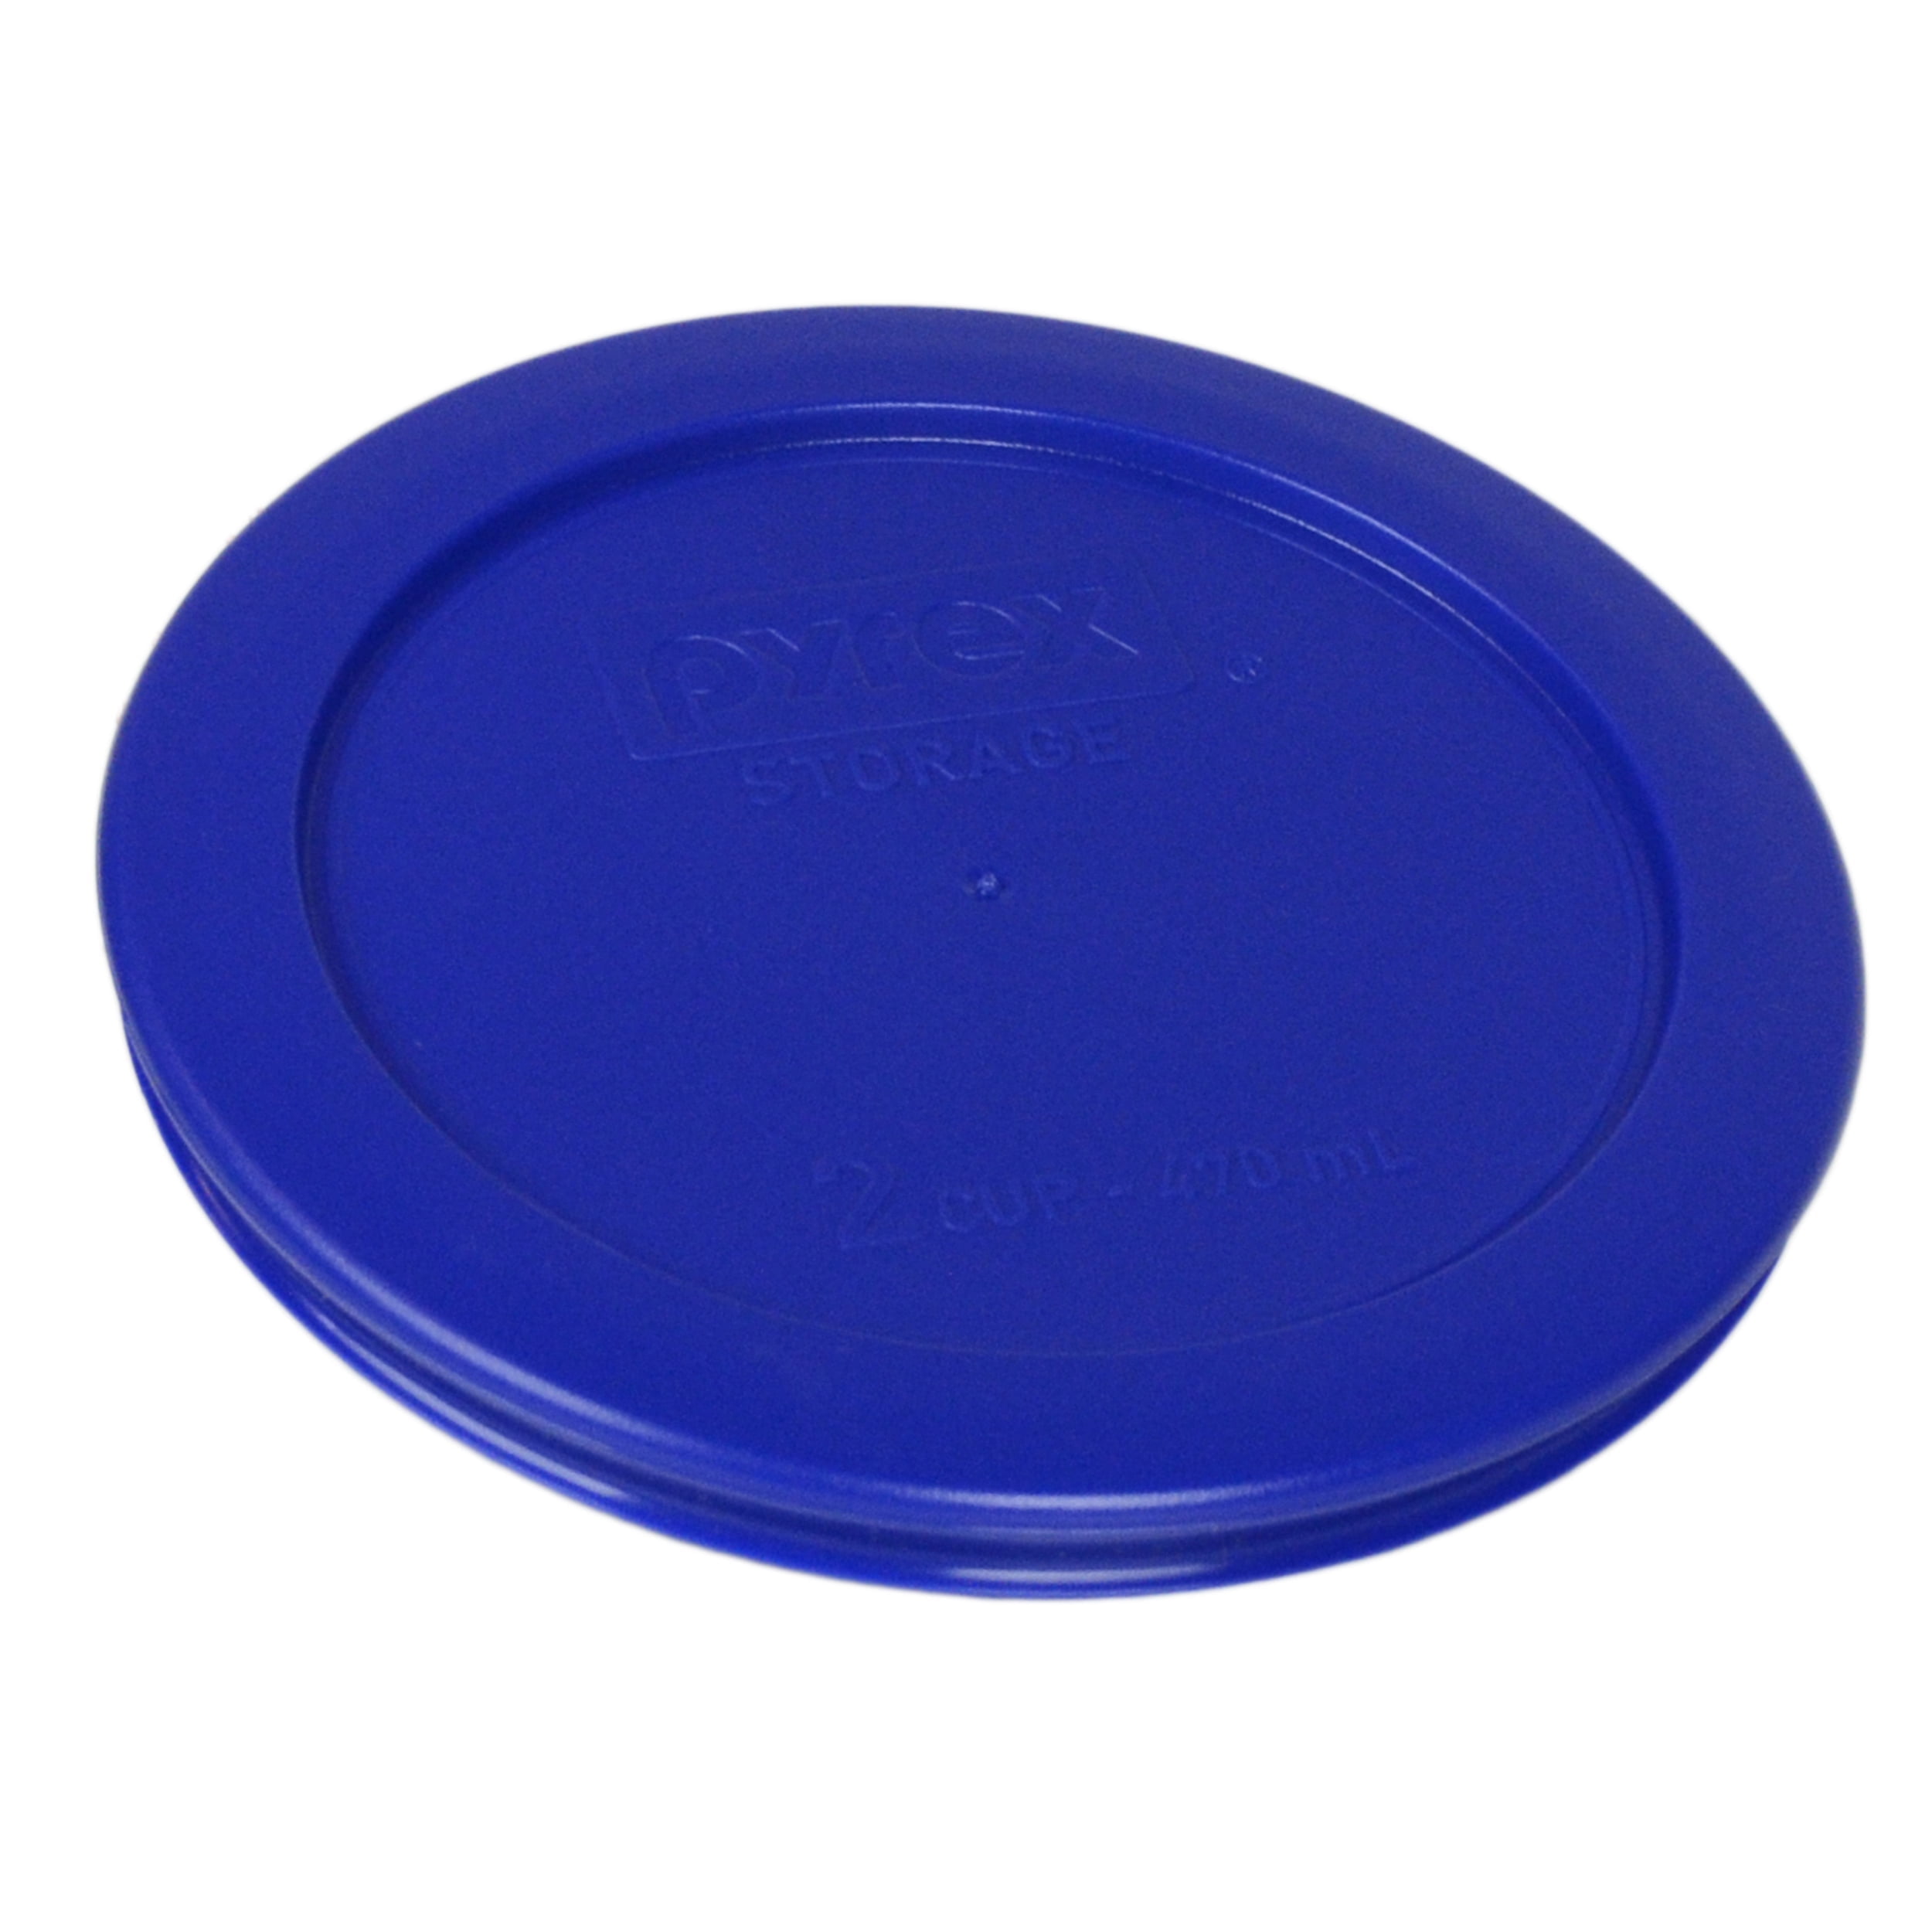 Pyrex (4) Simply Store 7200 2-Cup Glass Storage Bowls w/ (4) 7200-PC Cadet Blue Plastic Lids